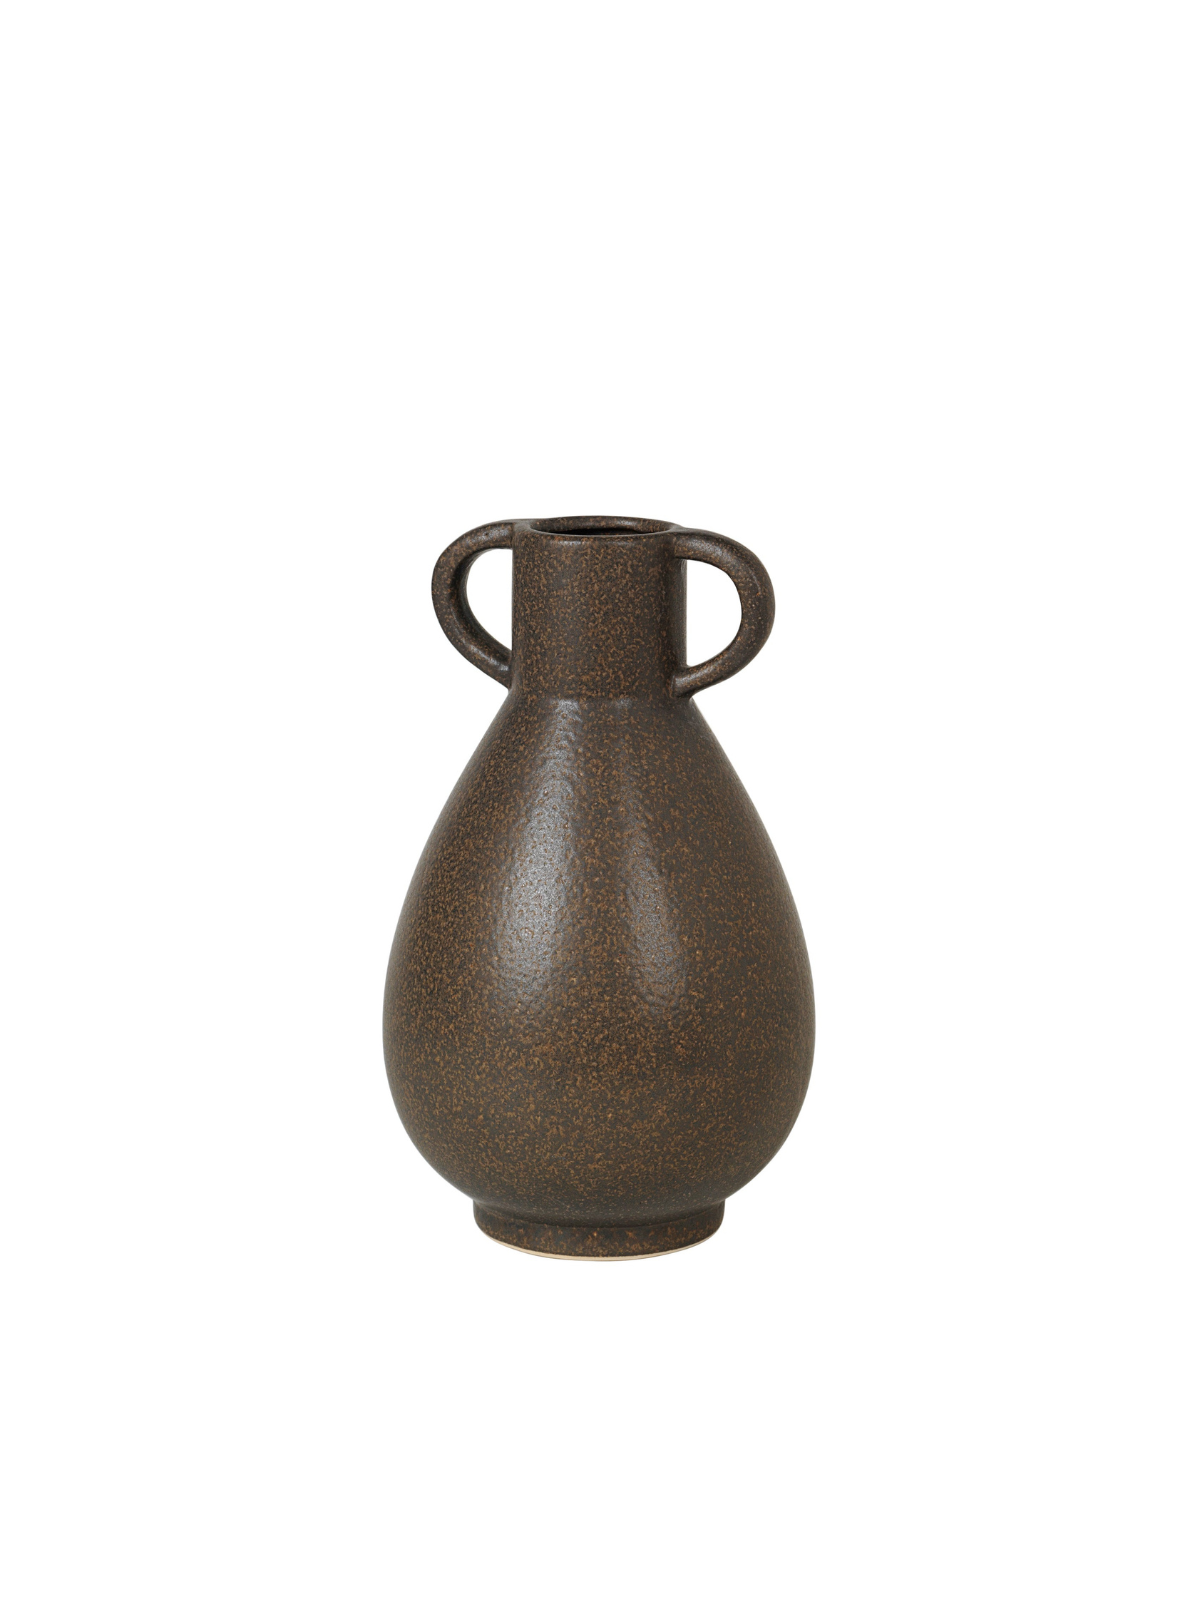 Simi Antique Brown Vase